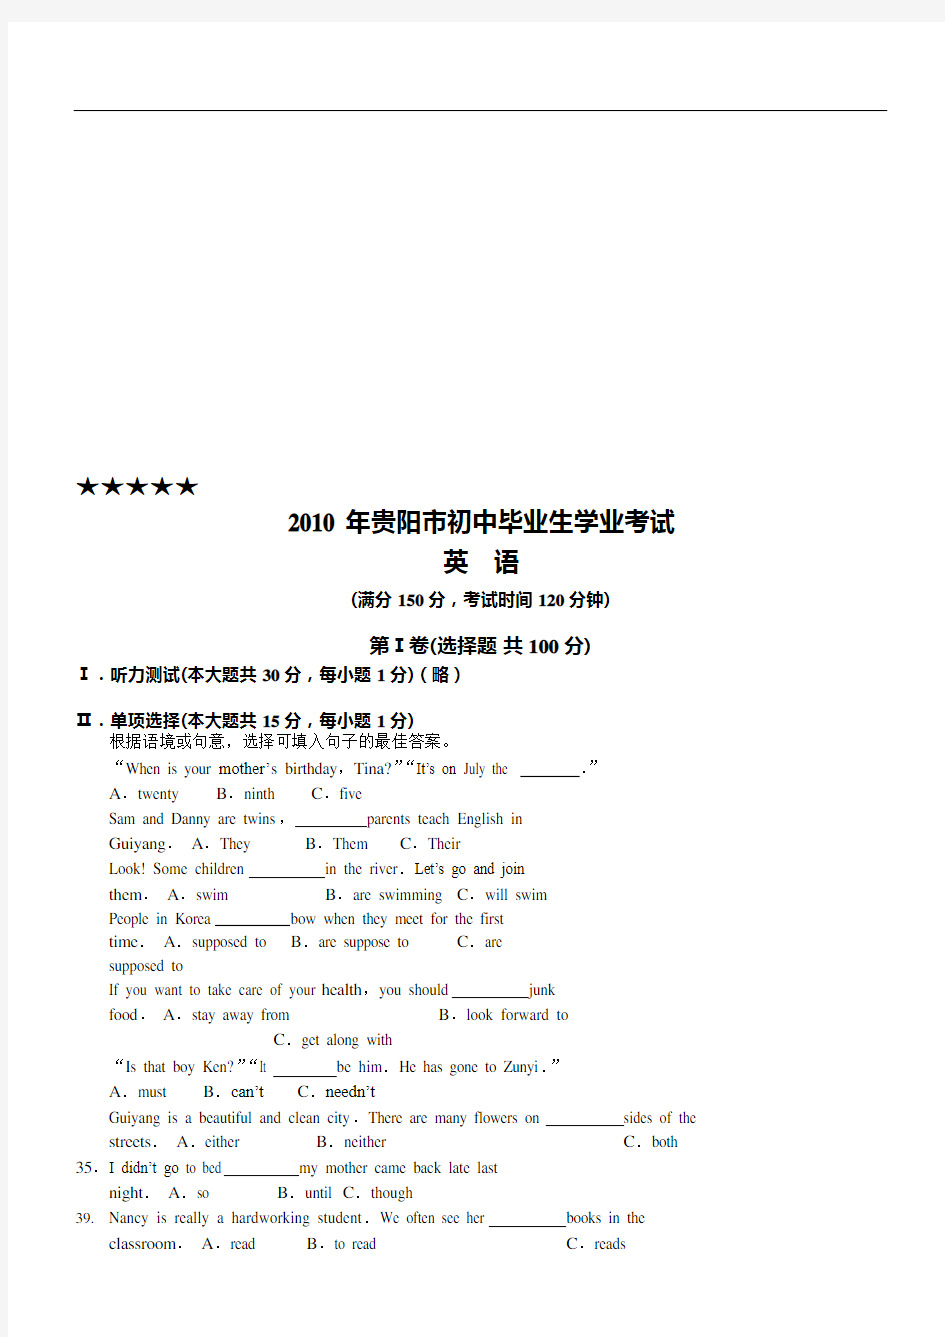 (完整版)贵阳市中考英语试卷及答案,推荐文档